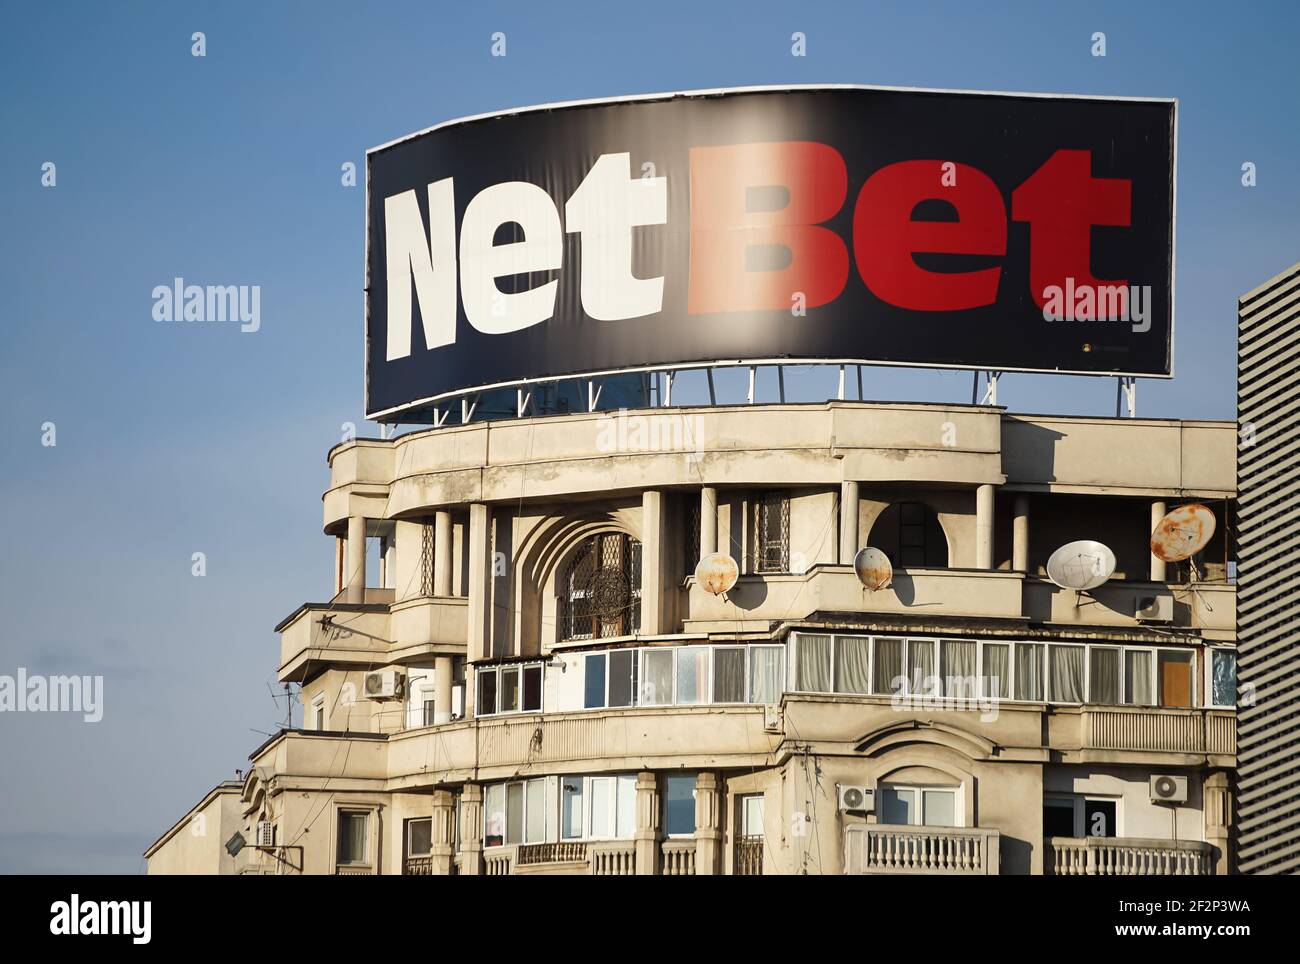 Bukarest, Rumänien - 25. Januar 2021: Eine große NetBet Anzeige des Glücksspielbetreibers NetBet Enterprises Ltd, ist über einem Wohnblock in gesehen Stockfoto